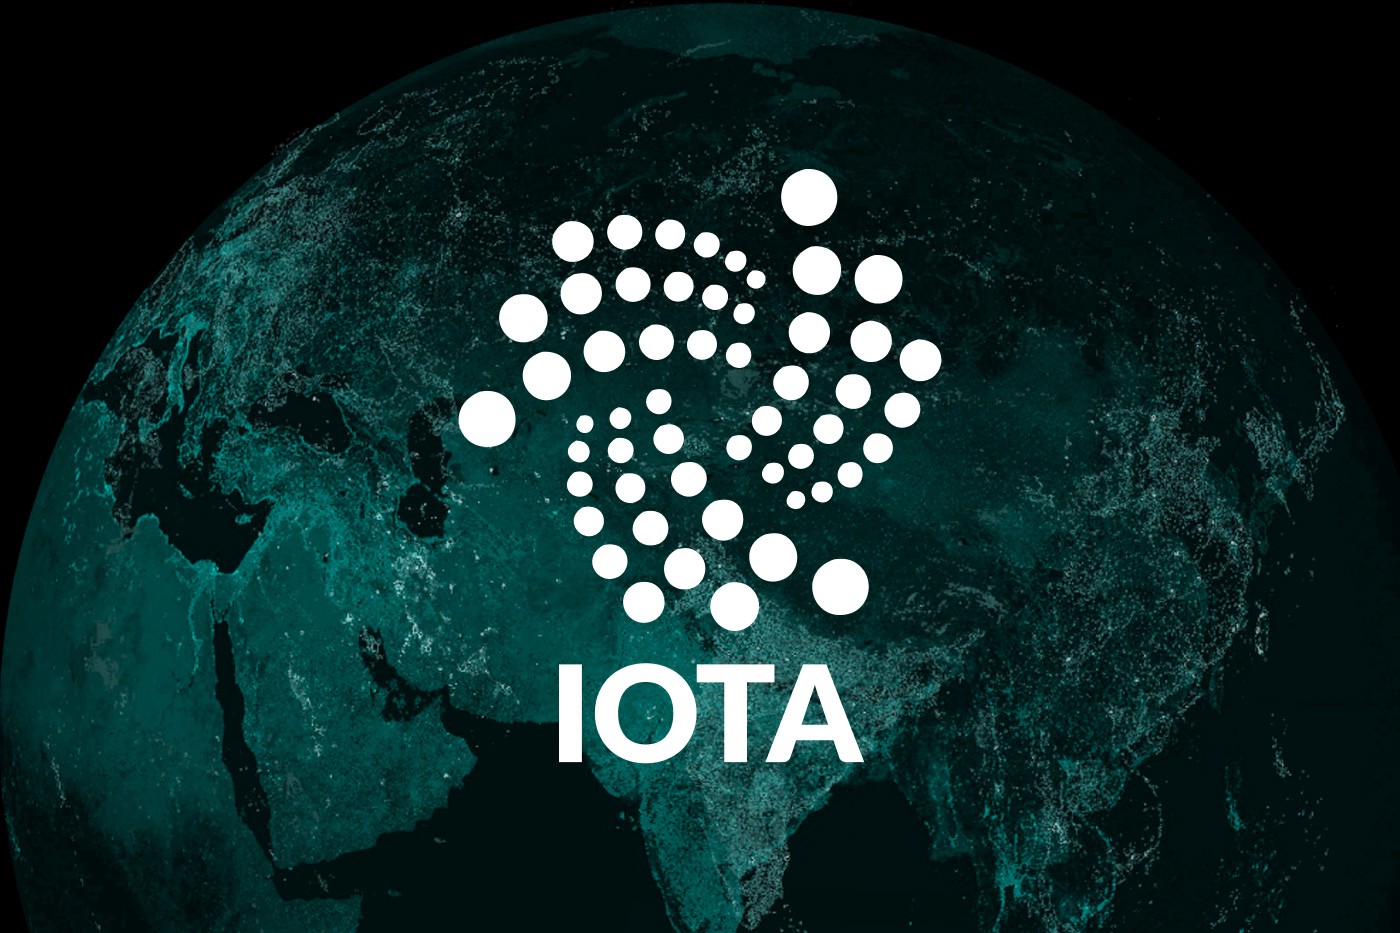 iota - صعود ناگهانی IOTA؛ آیا باز هم اوج میگرید!؟